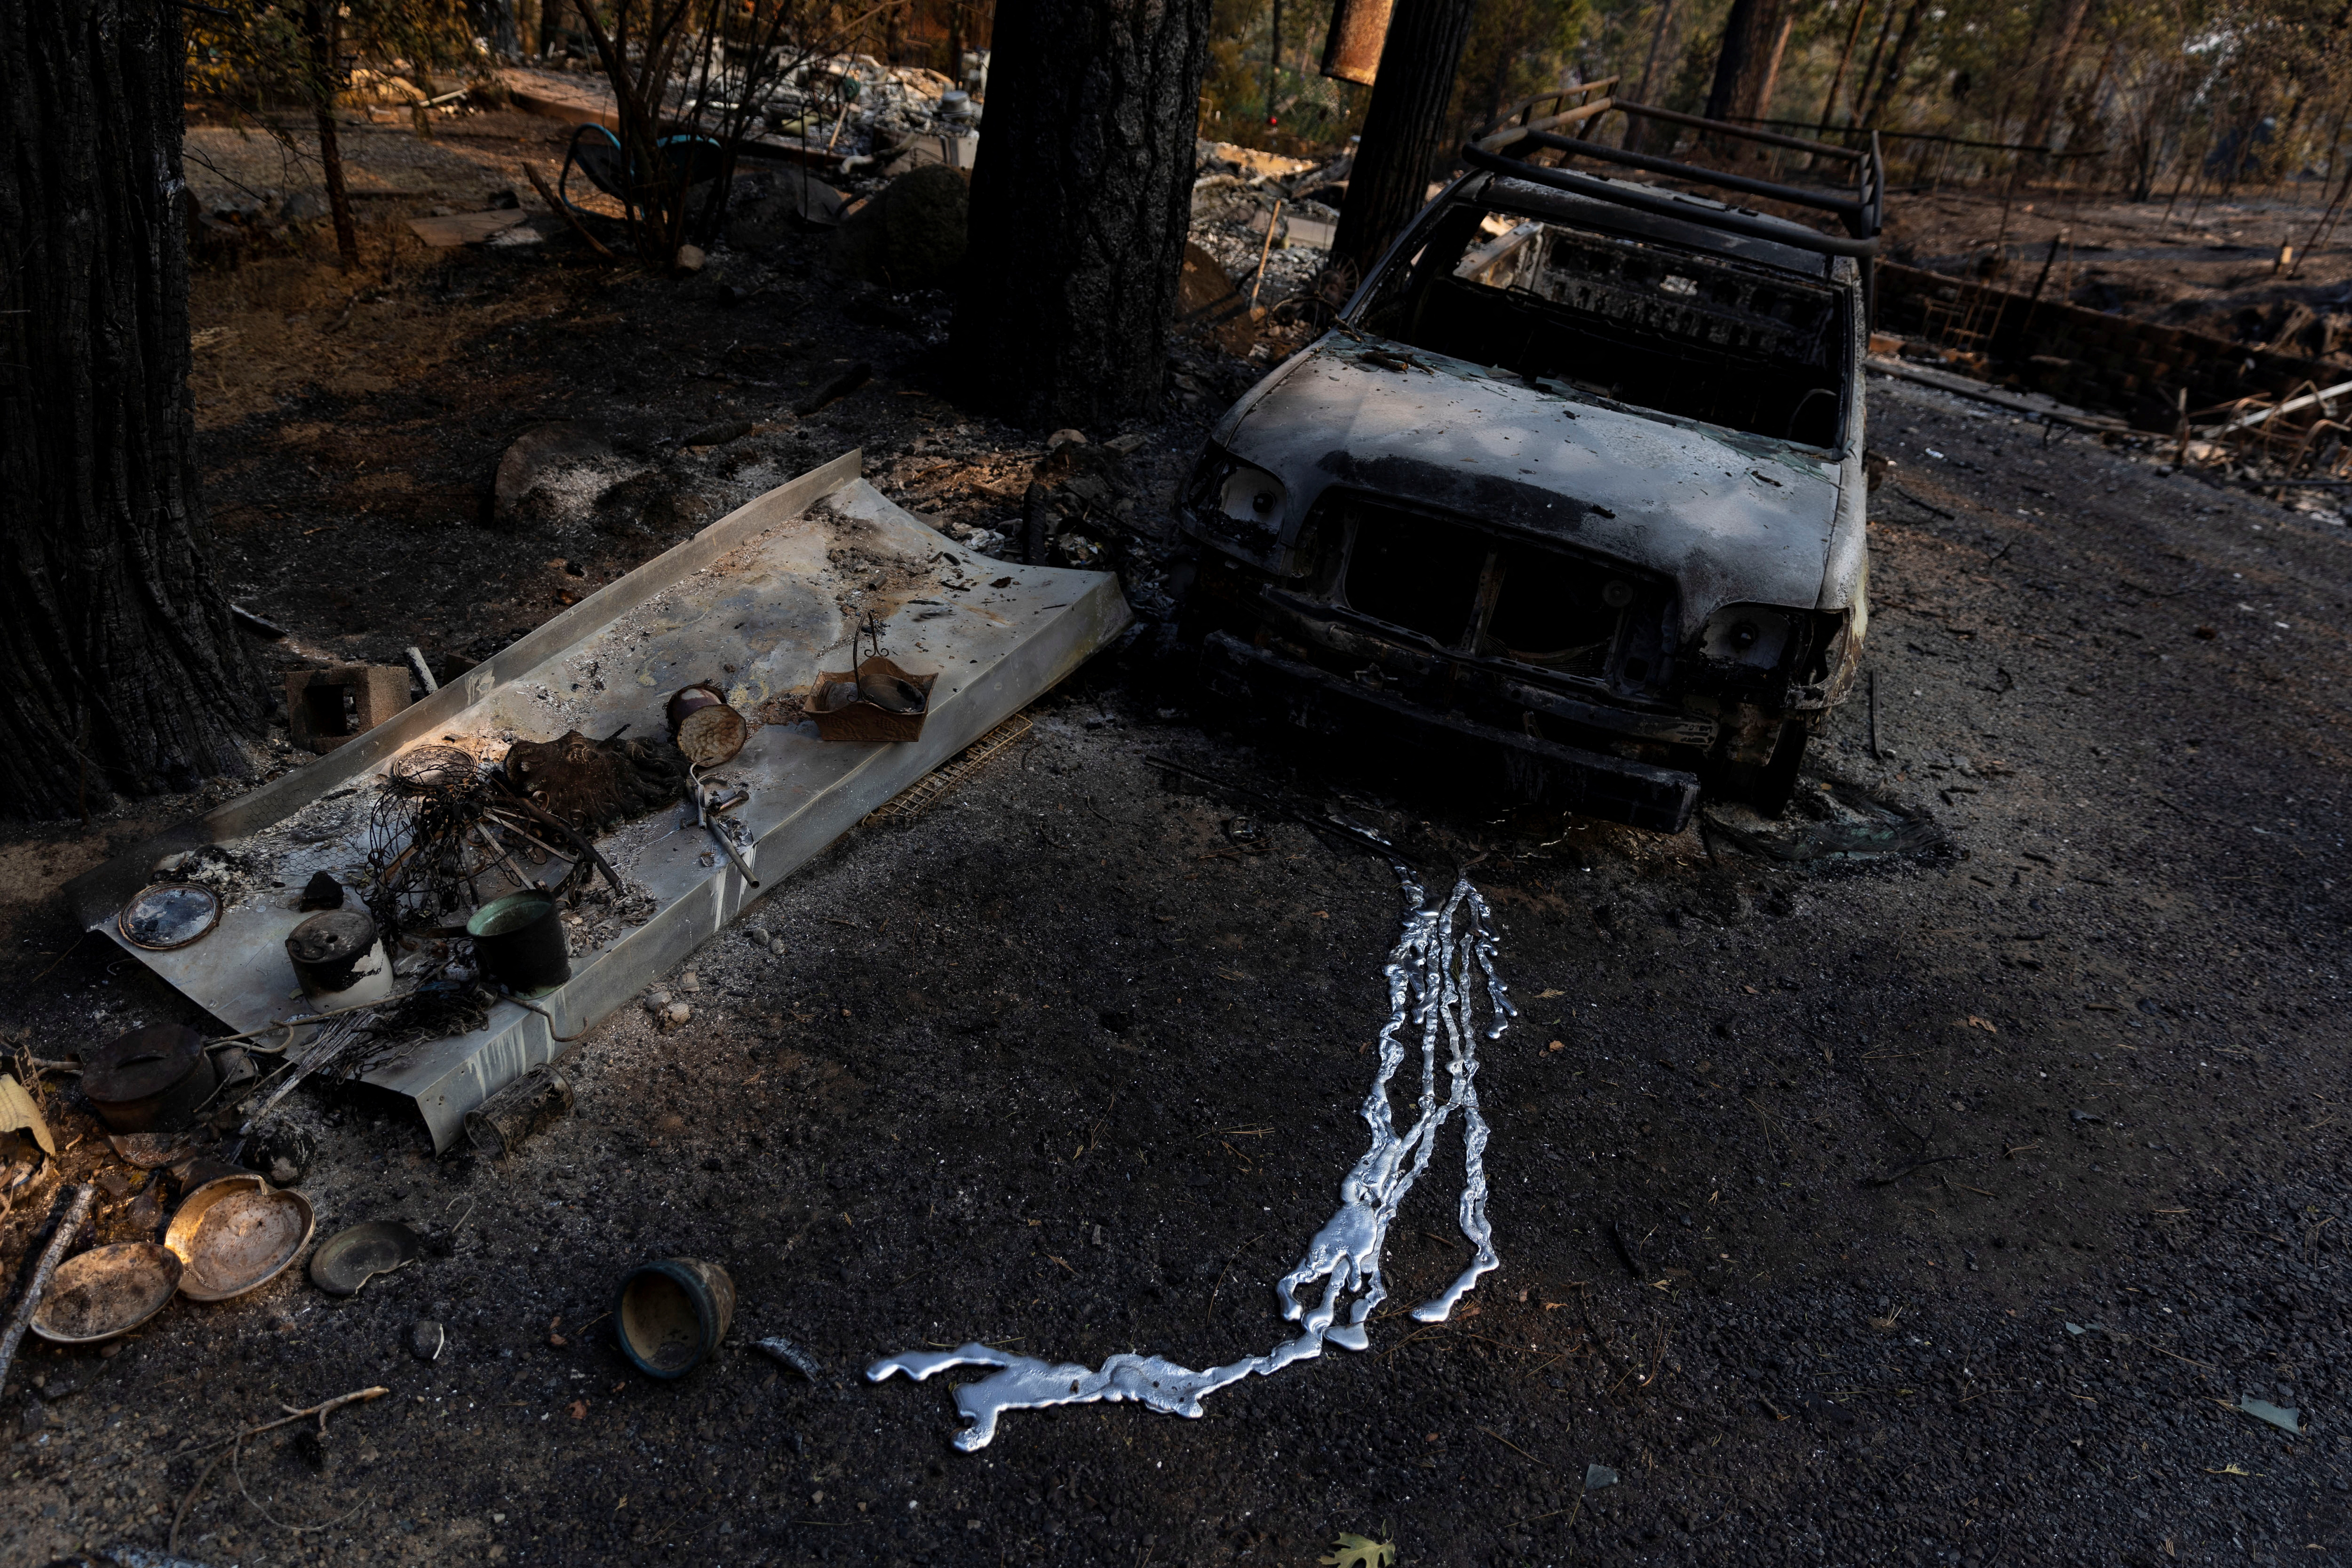 El metal derretido de un vehículo quemado se ve cuando Oak Fire quema áreas cerca de Darrah en el condado de Mariposa, California, EE. UU., 24 de julio de 2022.REUTERS/Carlos Barria